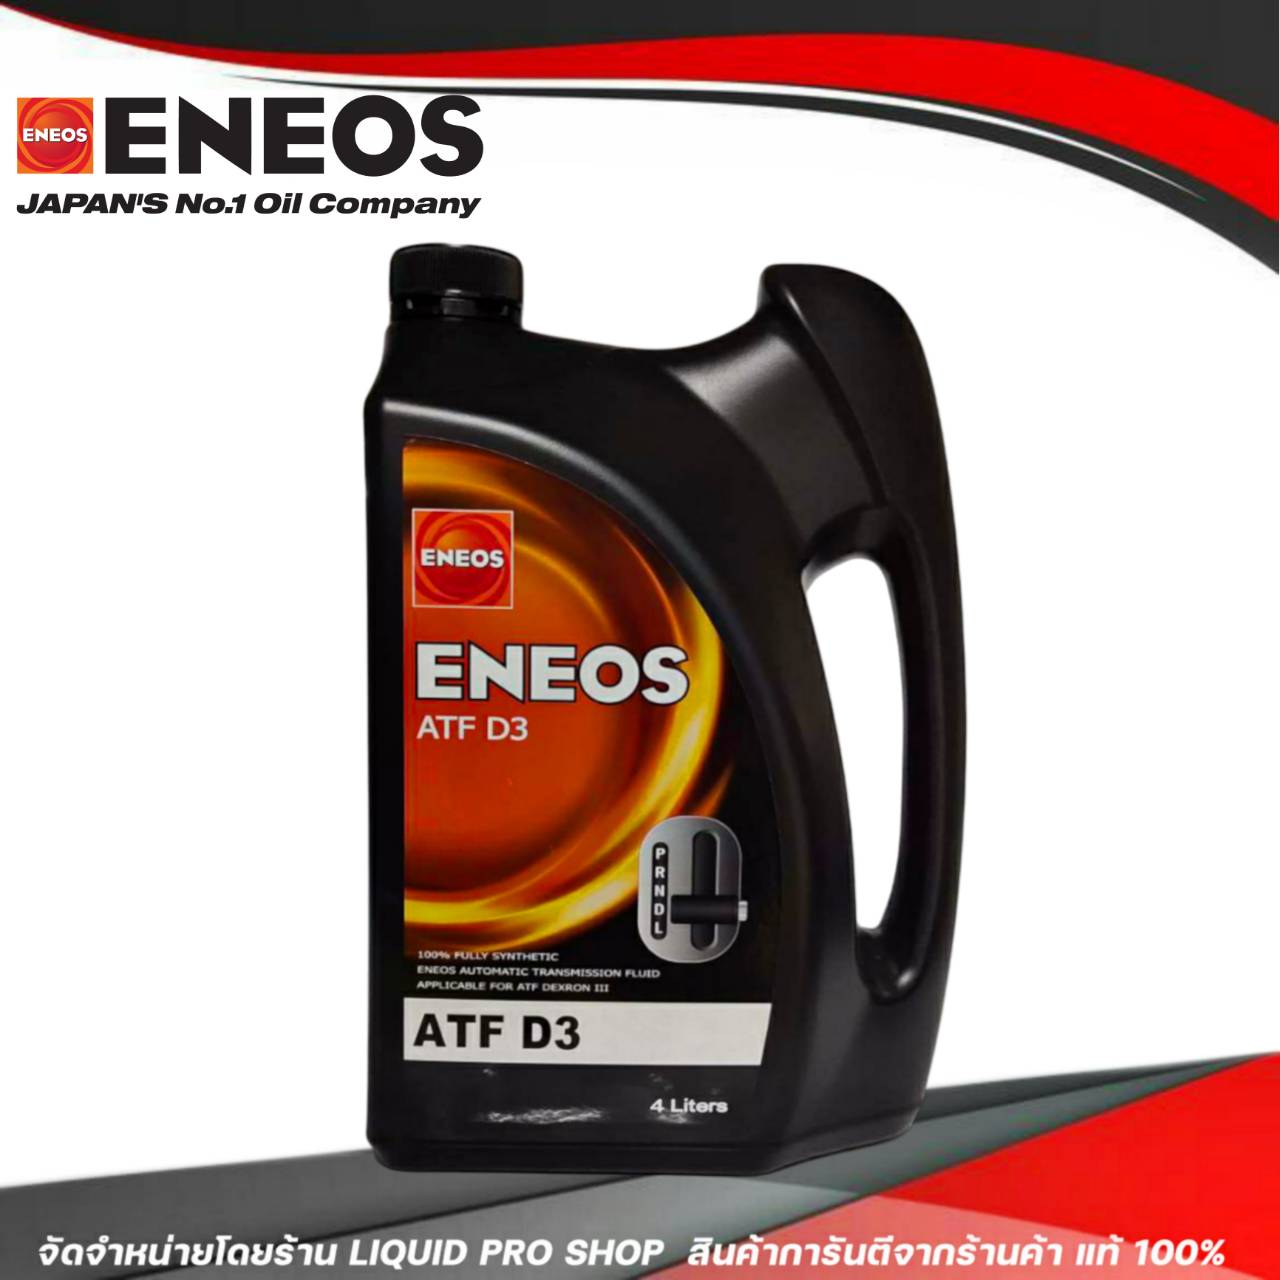 เกี่ยวกับ ENEOS น้ำมันเกียร์อัตโนมัติ ENEOS ATF D3 น้ำมันเกียร์ออโต้เมติค พาวเวอร์ สูตรสังเคราห์แท้ 100% (ขนาด 4 ลิตร)